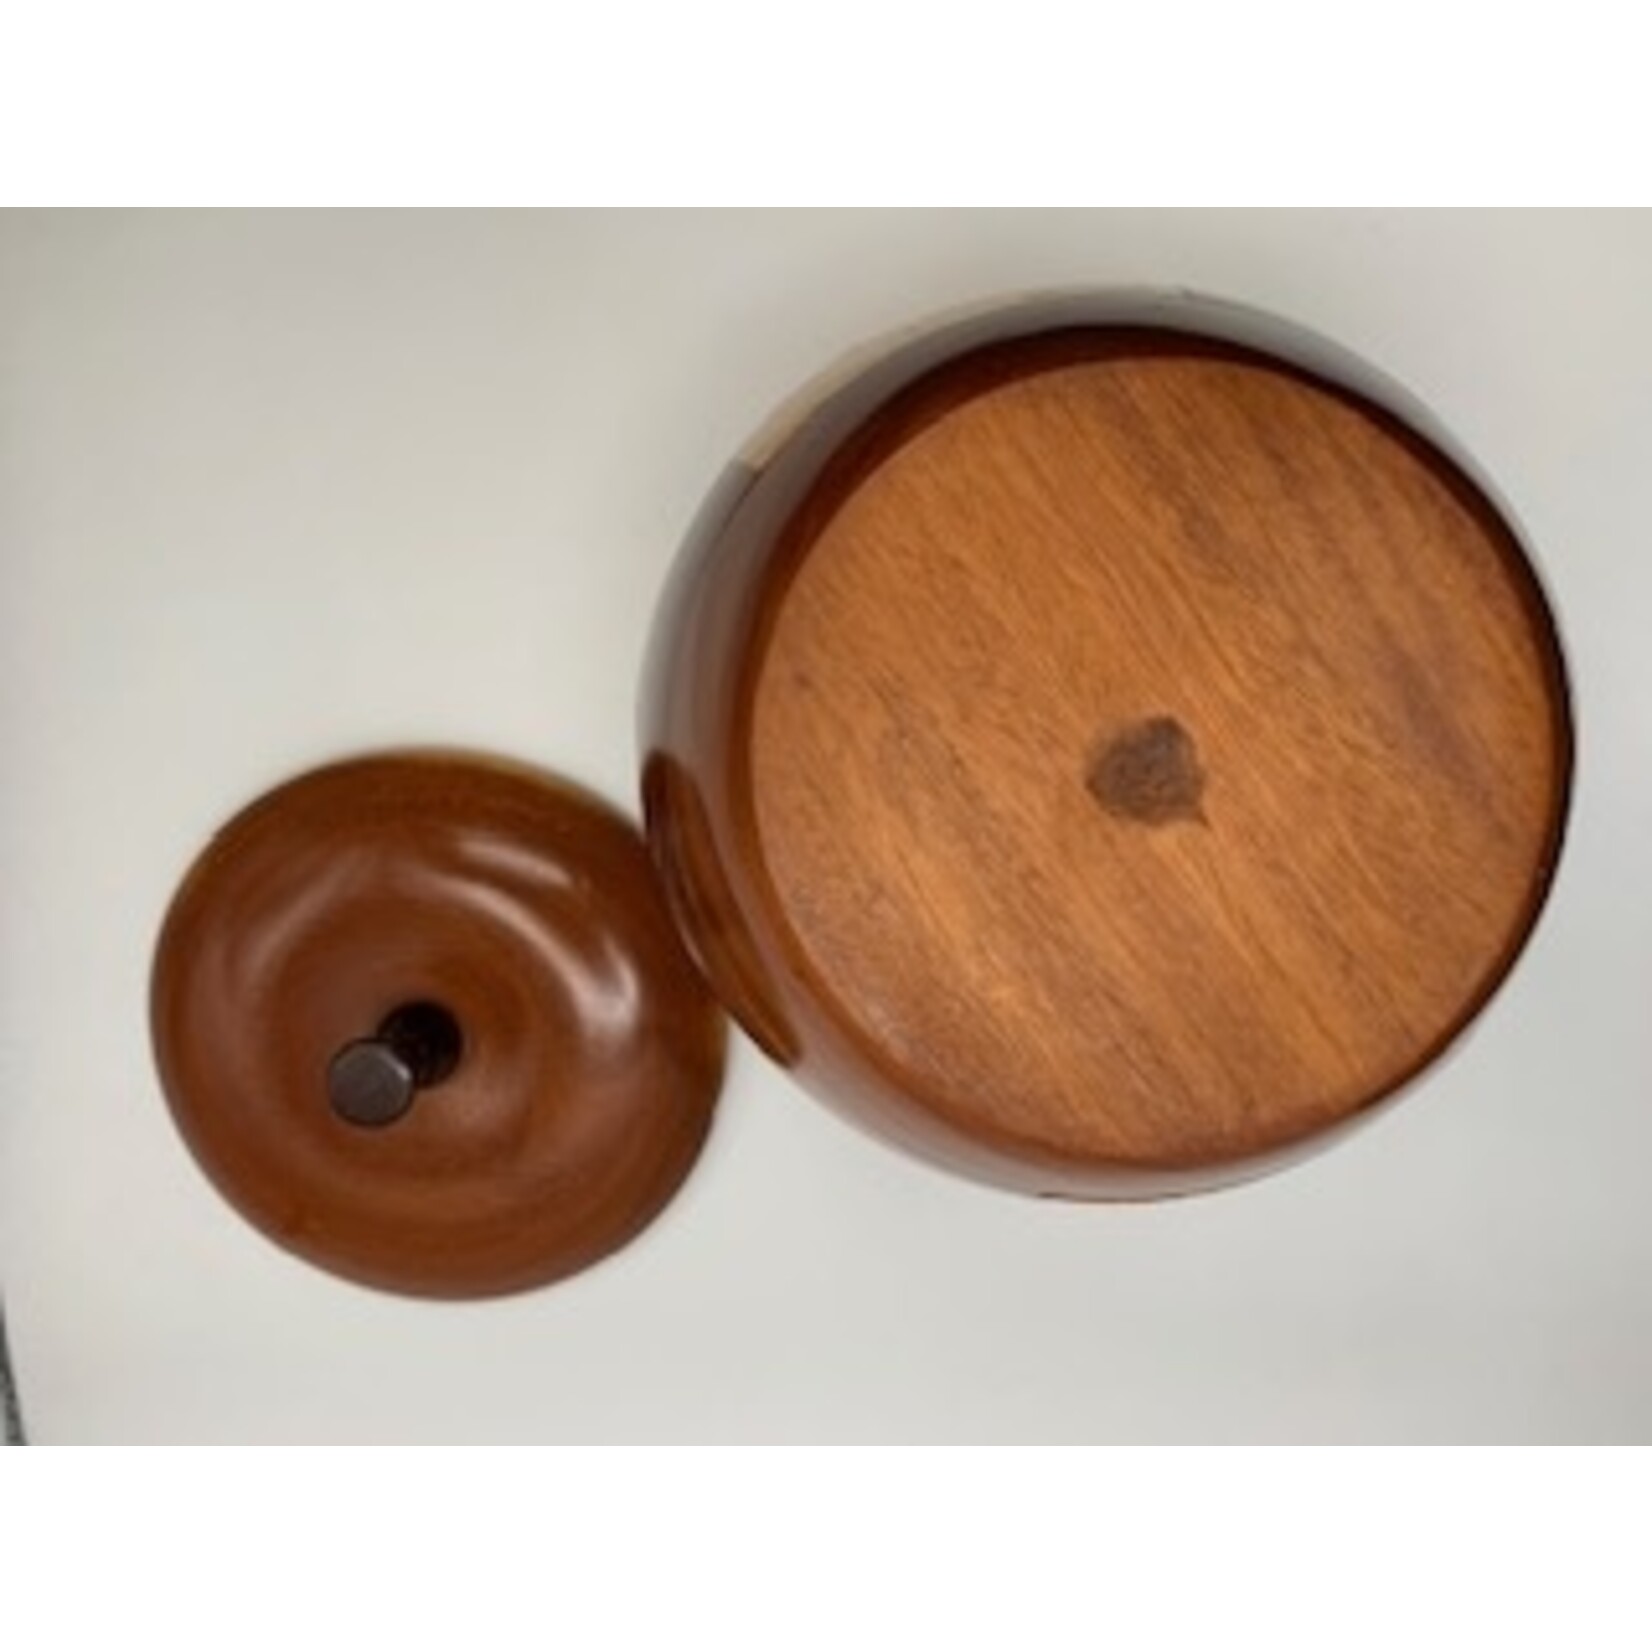 Nova Est Combined Wood Multipurpose Jar/Decor